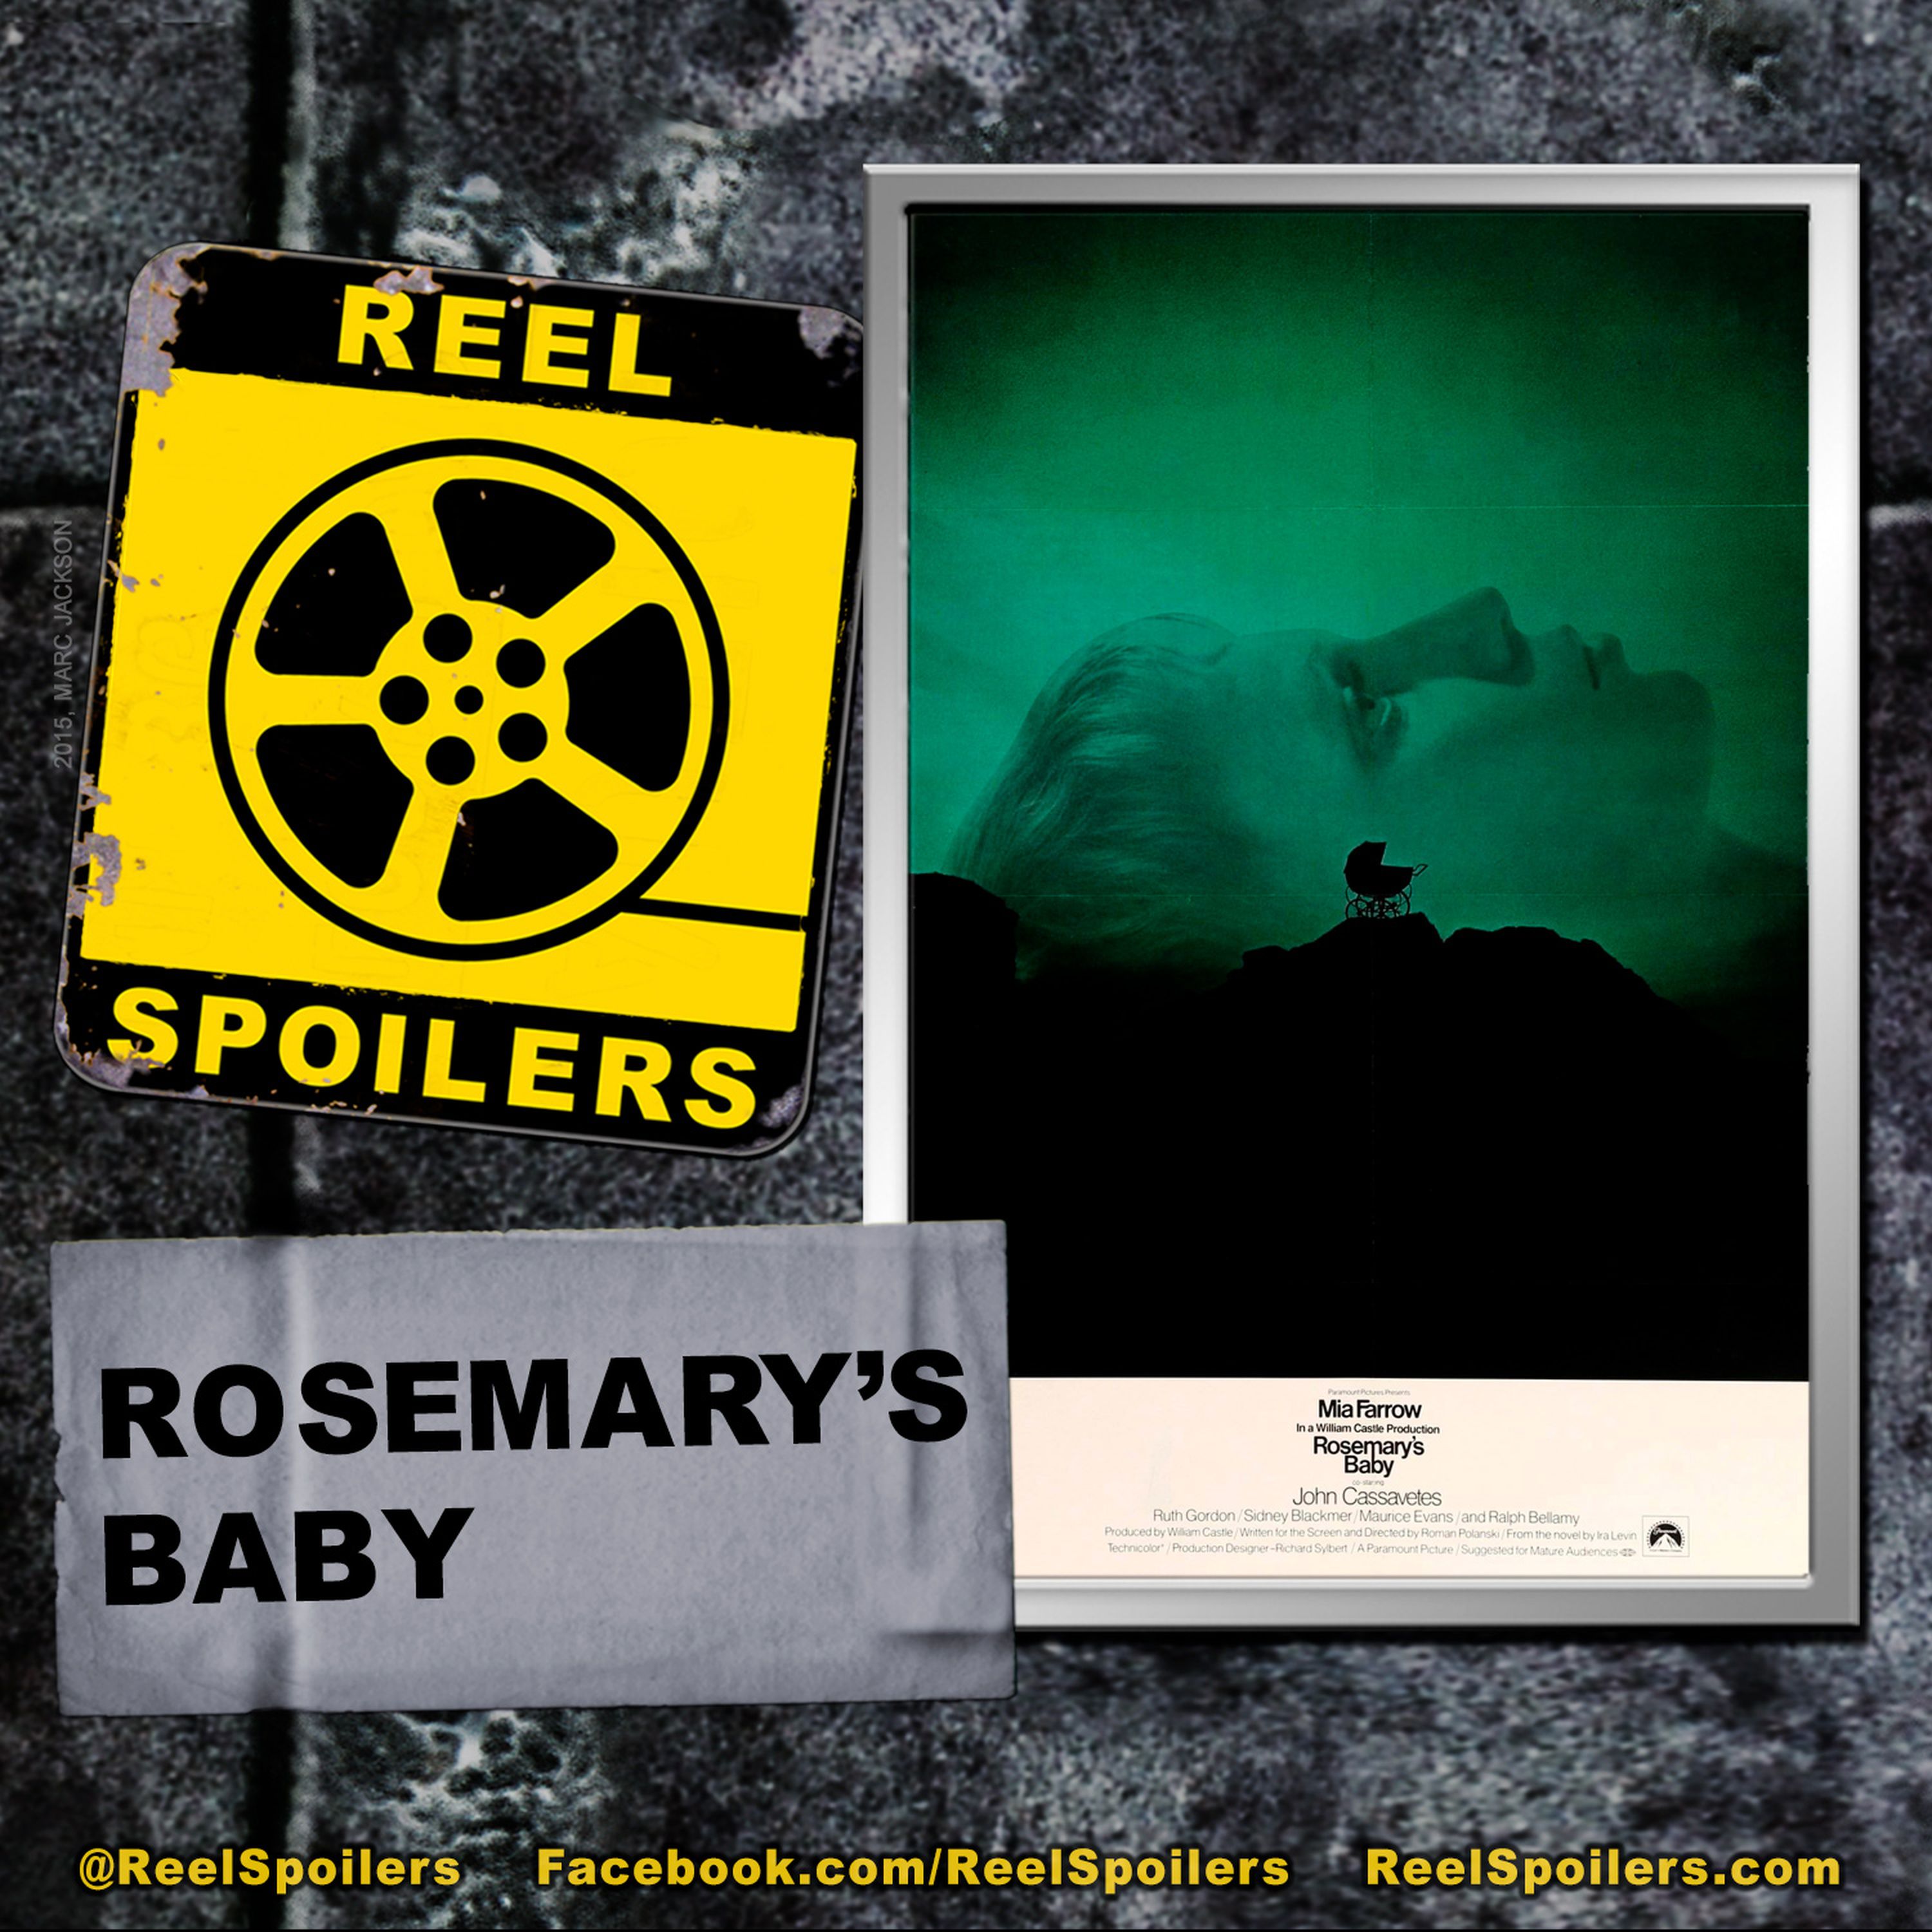 ROSEMARY'S BABY Starring Mia Farrow, John Cassavetes, Ruth Gordon Image